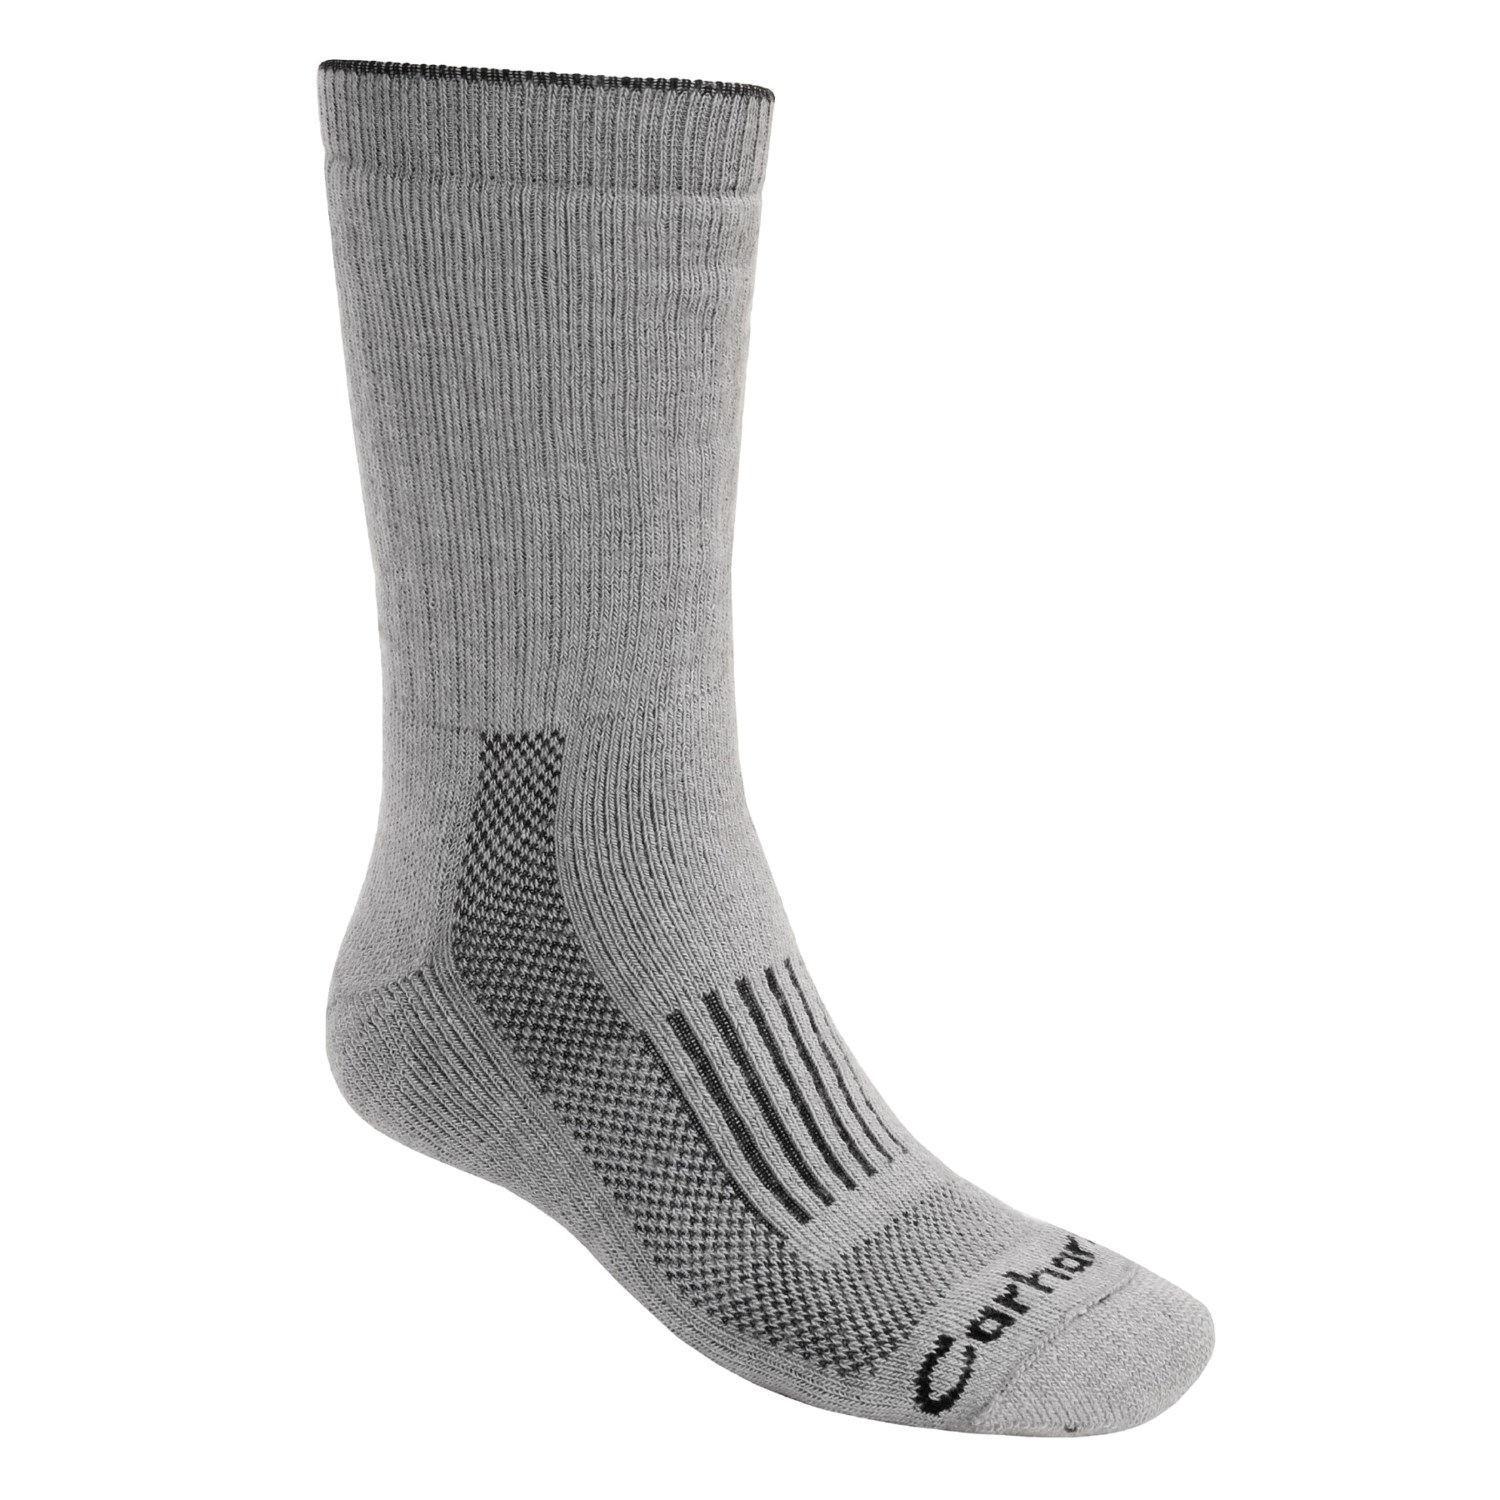 Carhartt Ultimate Work Socks (For Men) 1886F